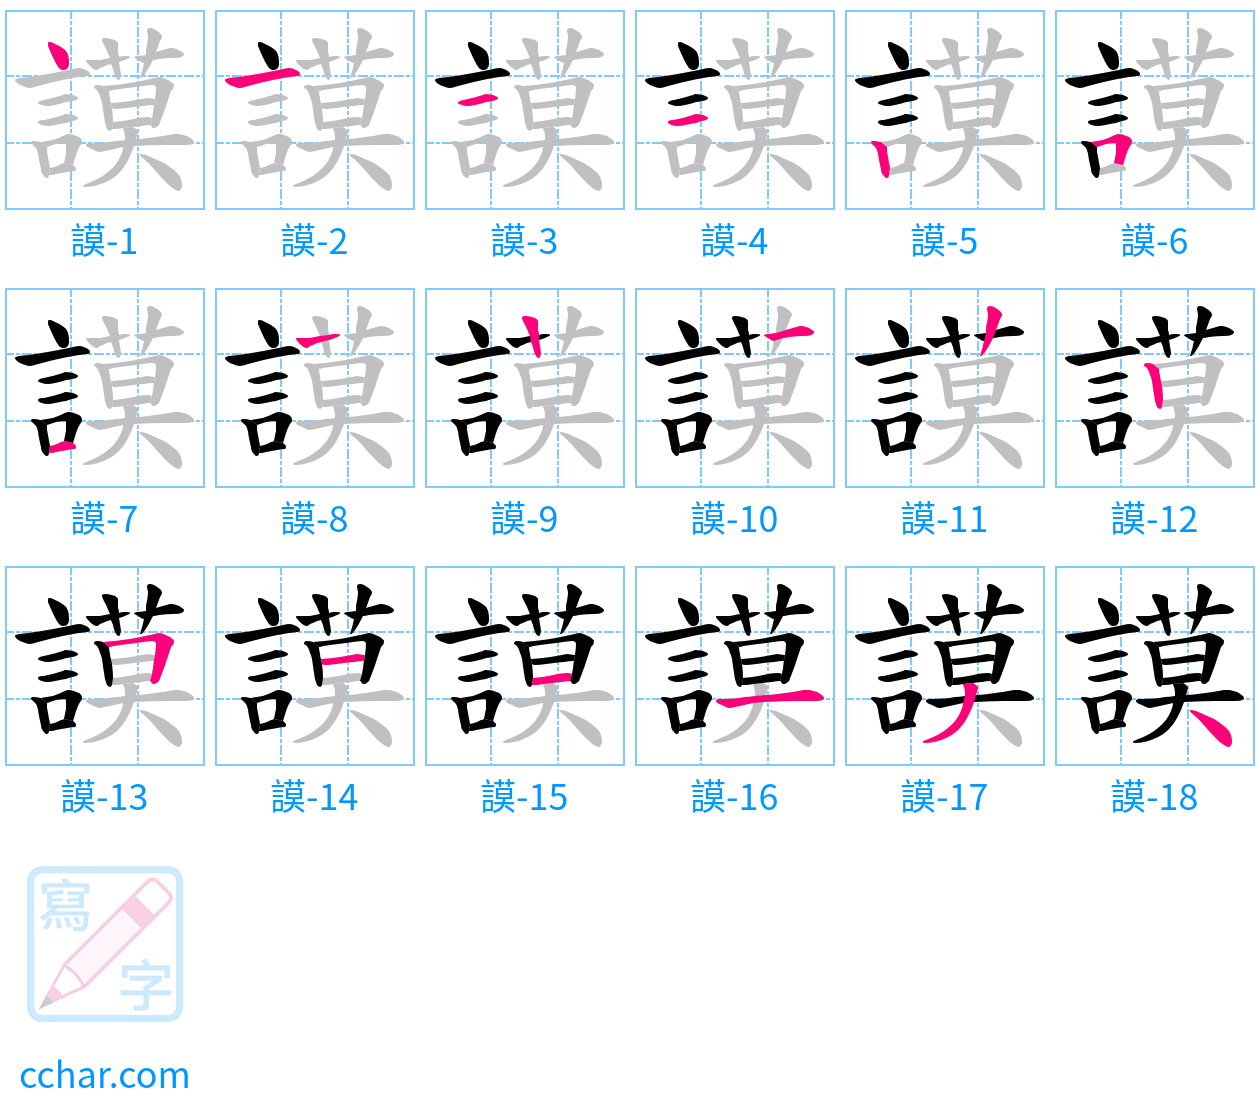 謨 stroke order step-by-step diagram